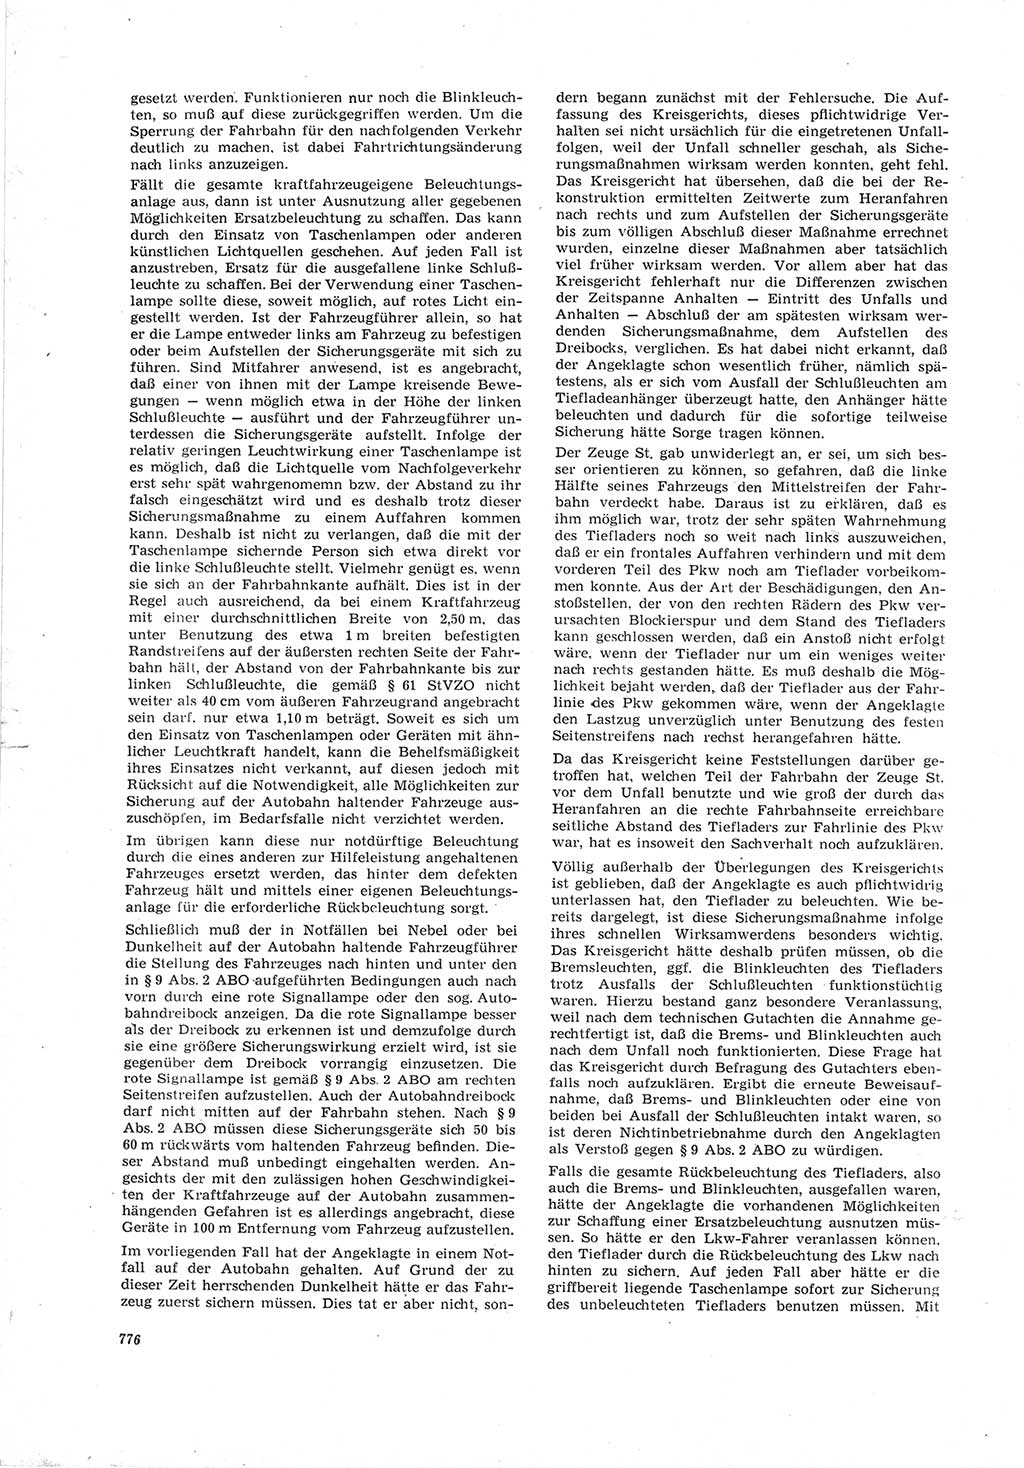 Neue Justiz (NJ), Zeitschrift für Recht und Rechtswissenschaft [Deutsche Demokratische Republik (DDR)], 19. Jahrgang 1965, Seite 776 (NJ DDR 1965, S. 776)